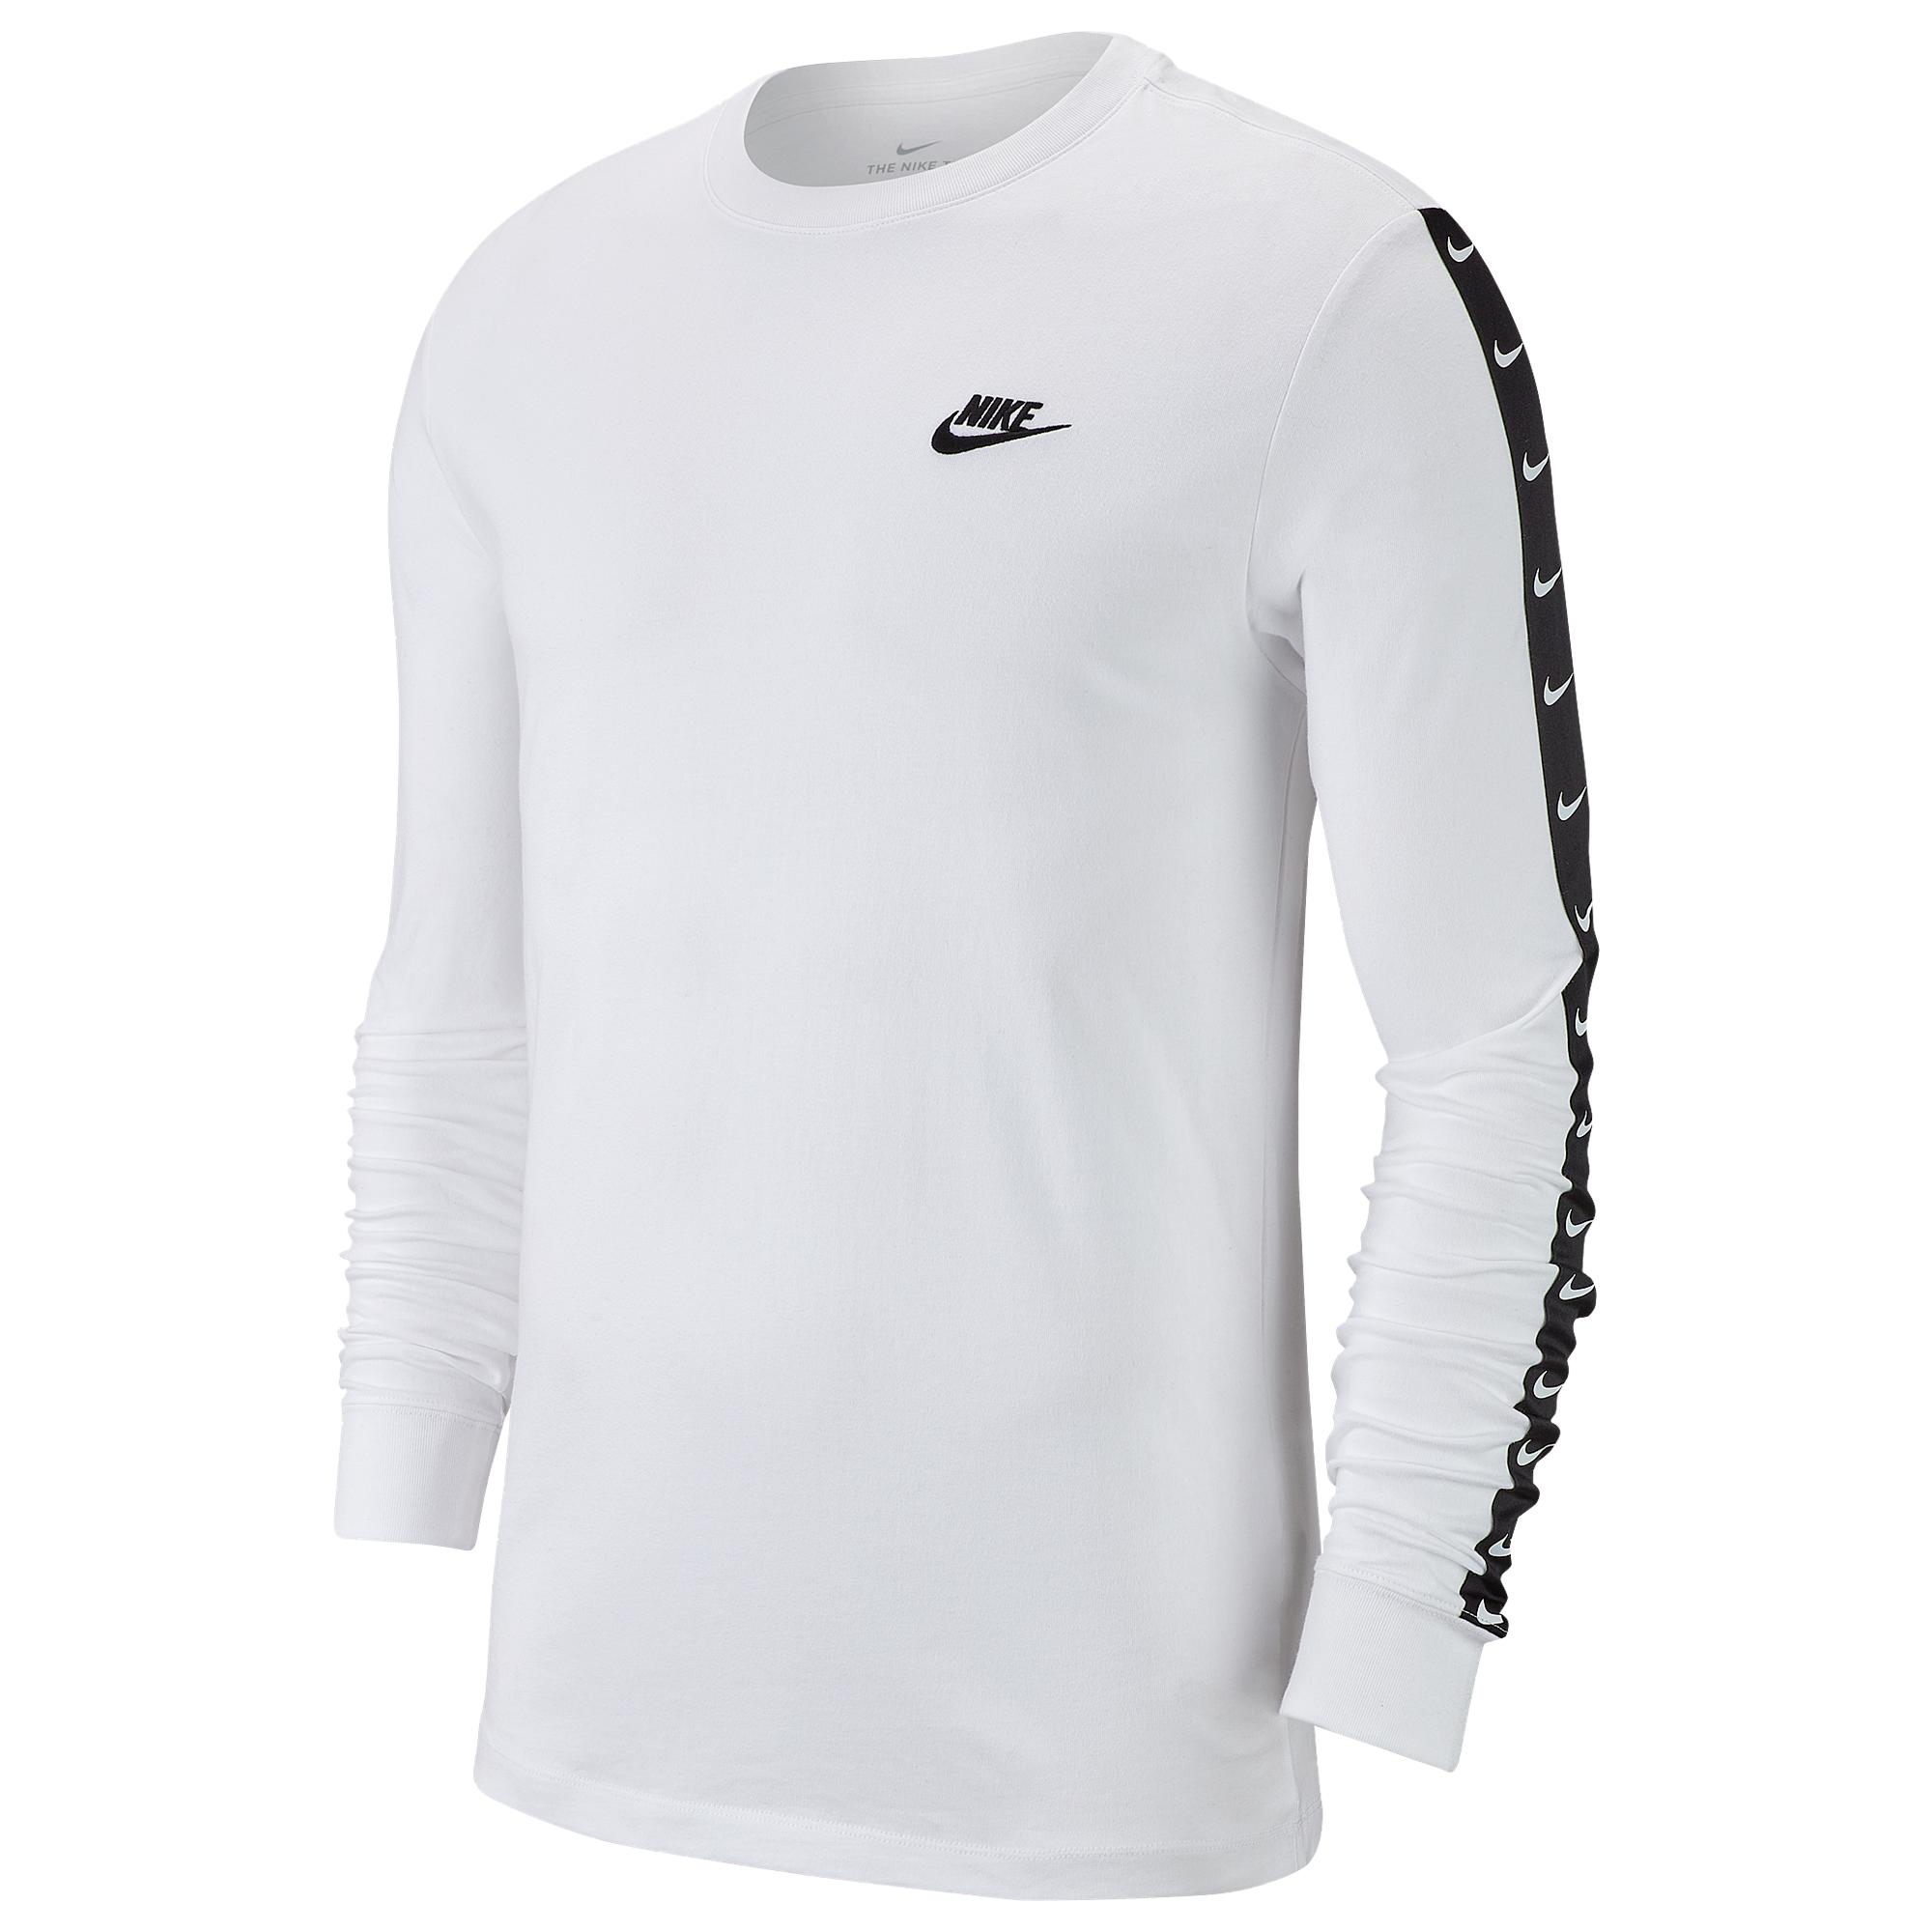 Nike Swoosh Long Sleeve T-shirt in White for Men - Lyst